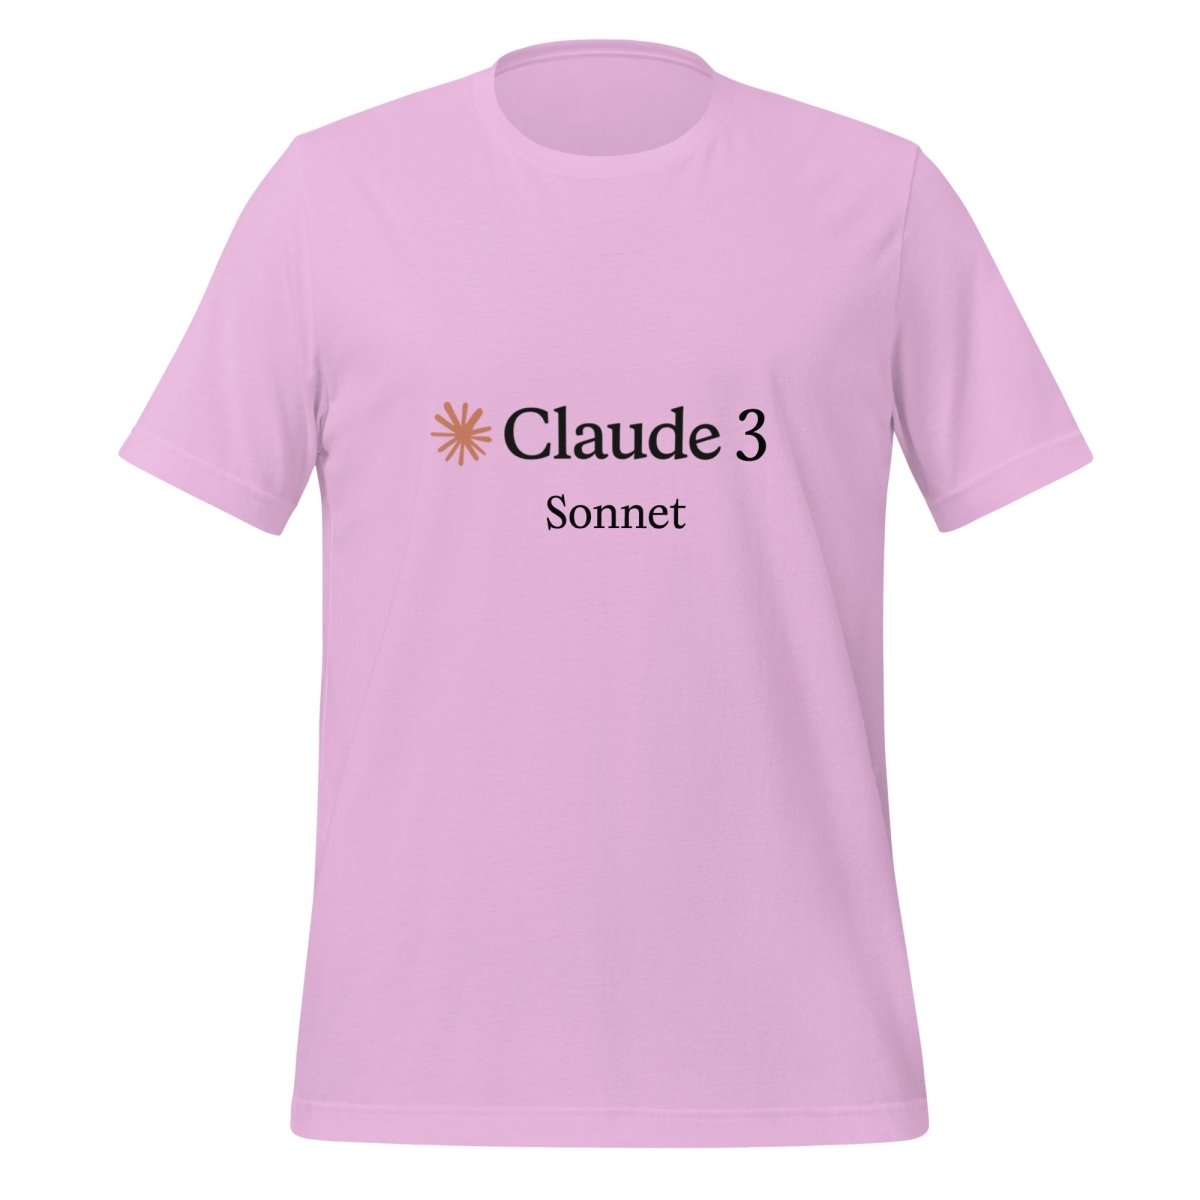 Claude 3 Sonnet T - Shirt (unisex) - Lilac - AI Store